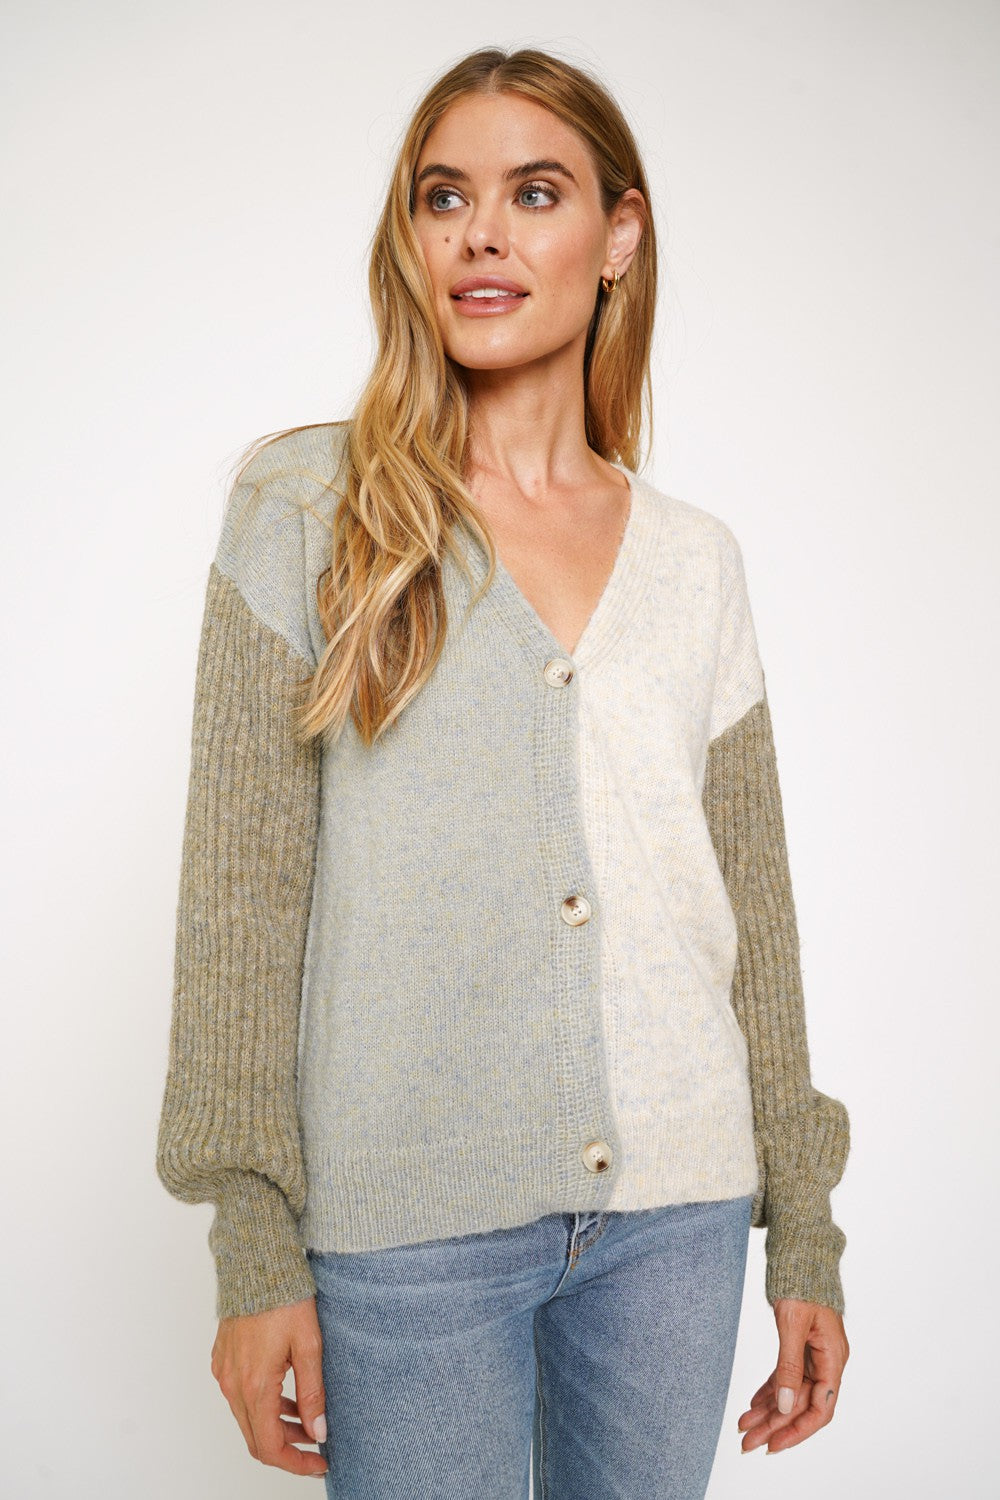 Christina’s Sweater